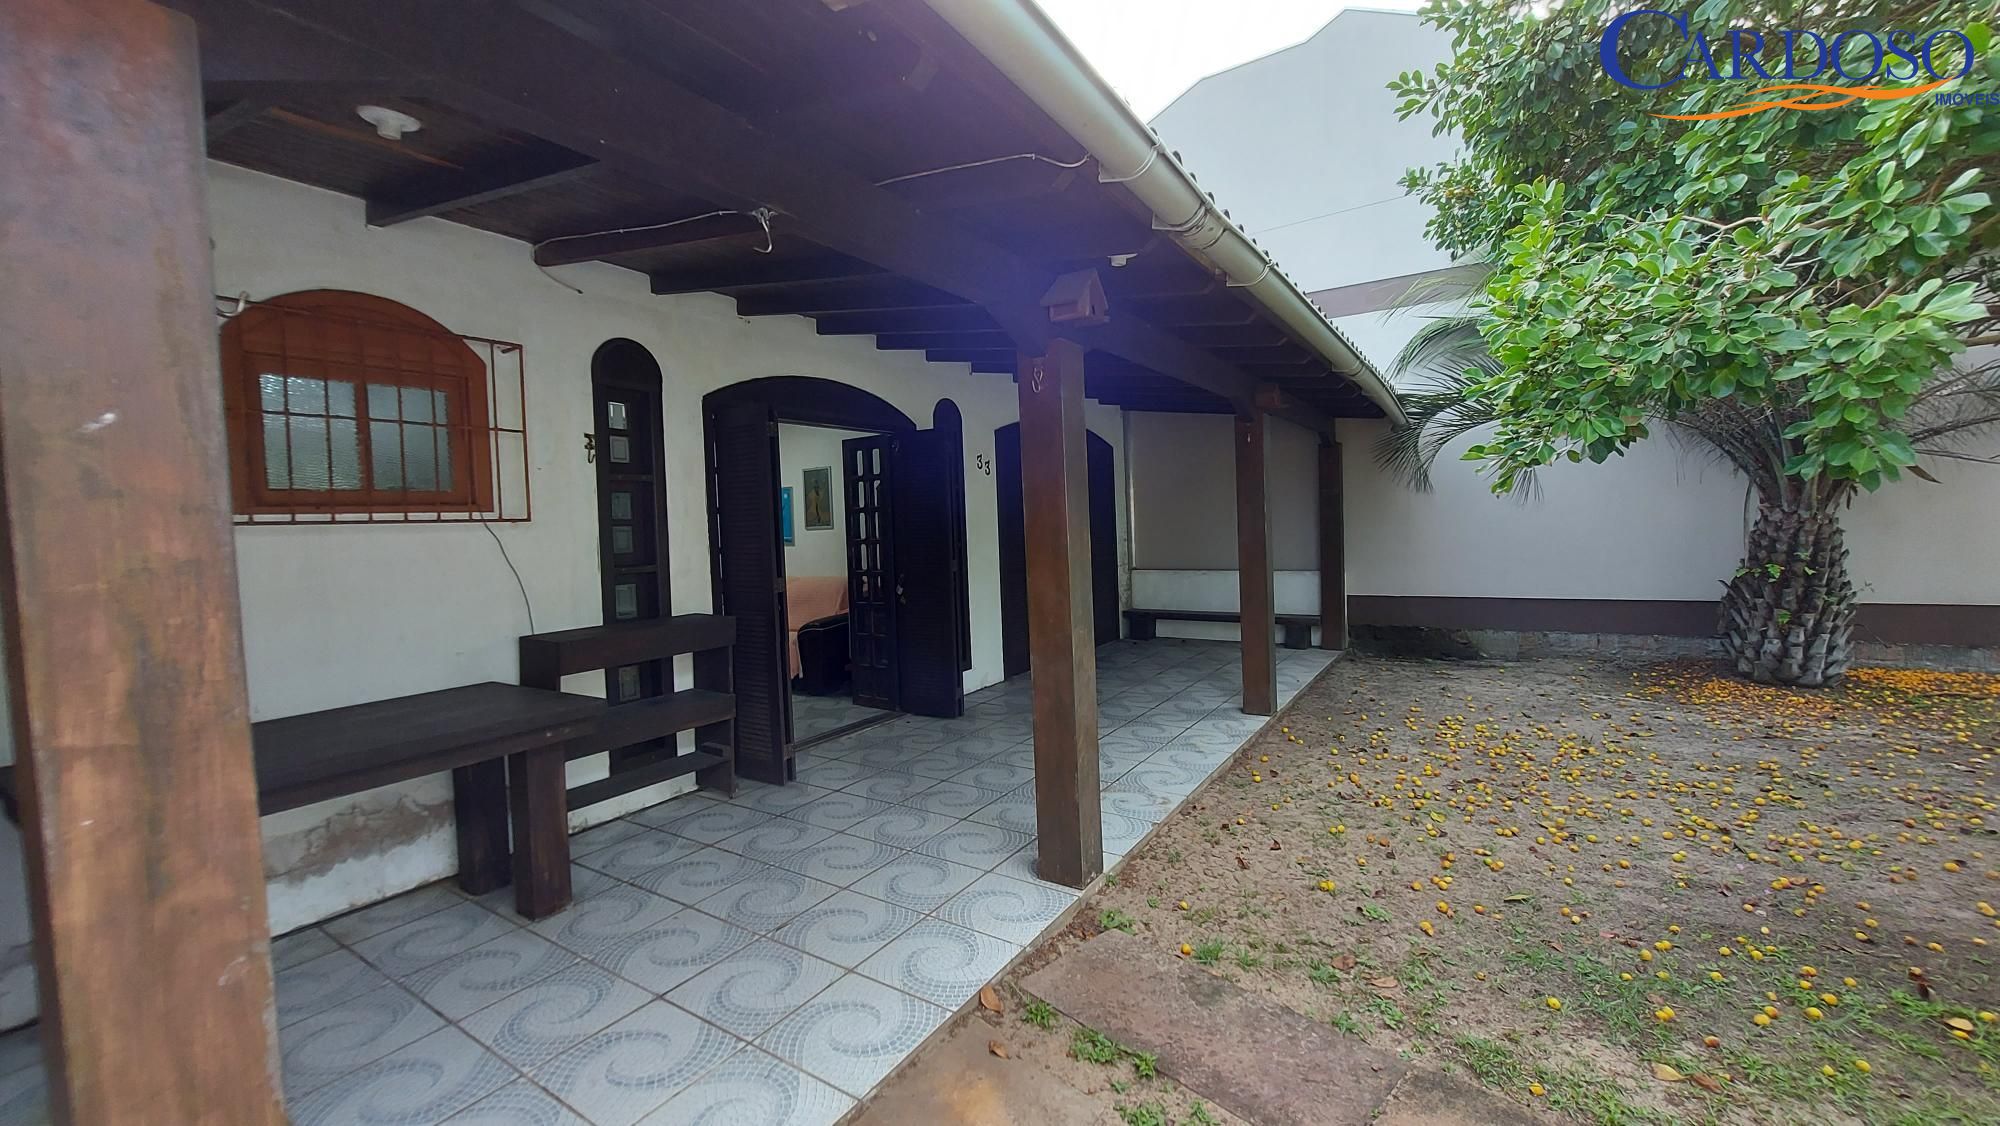 Casa com 2 Dormitórios à venda, 75 m² por R$ 228.000,00